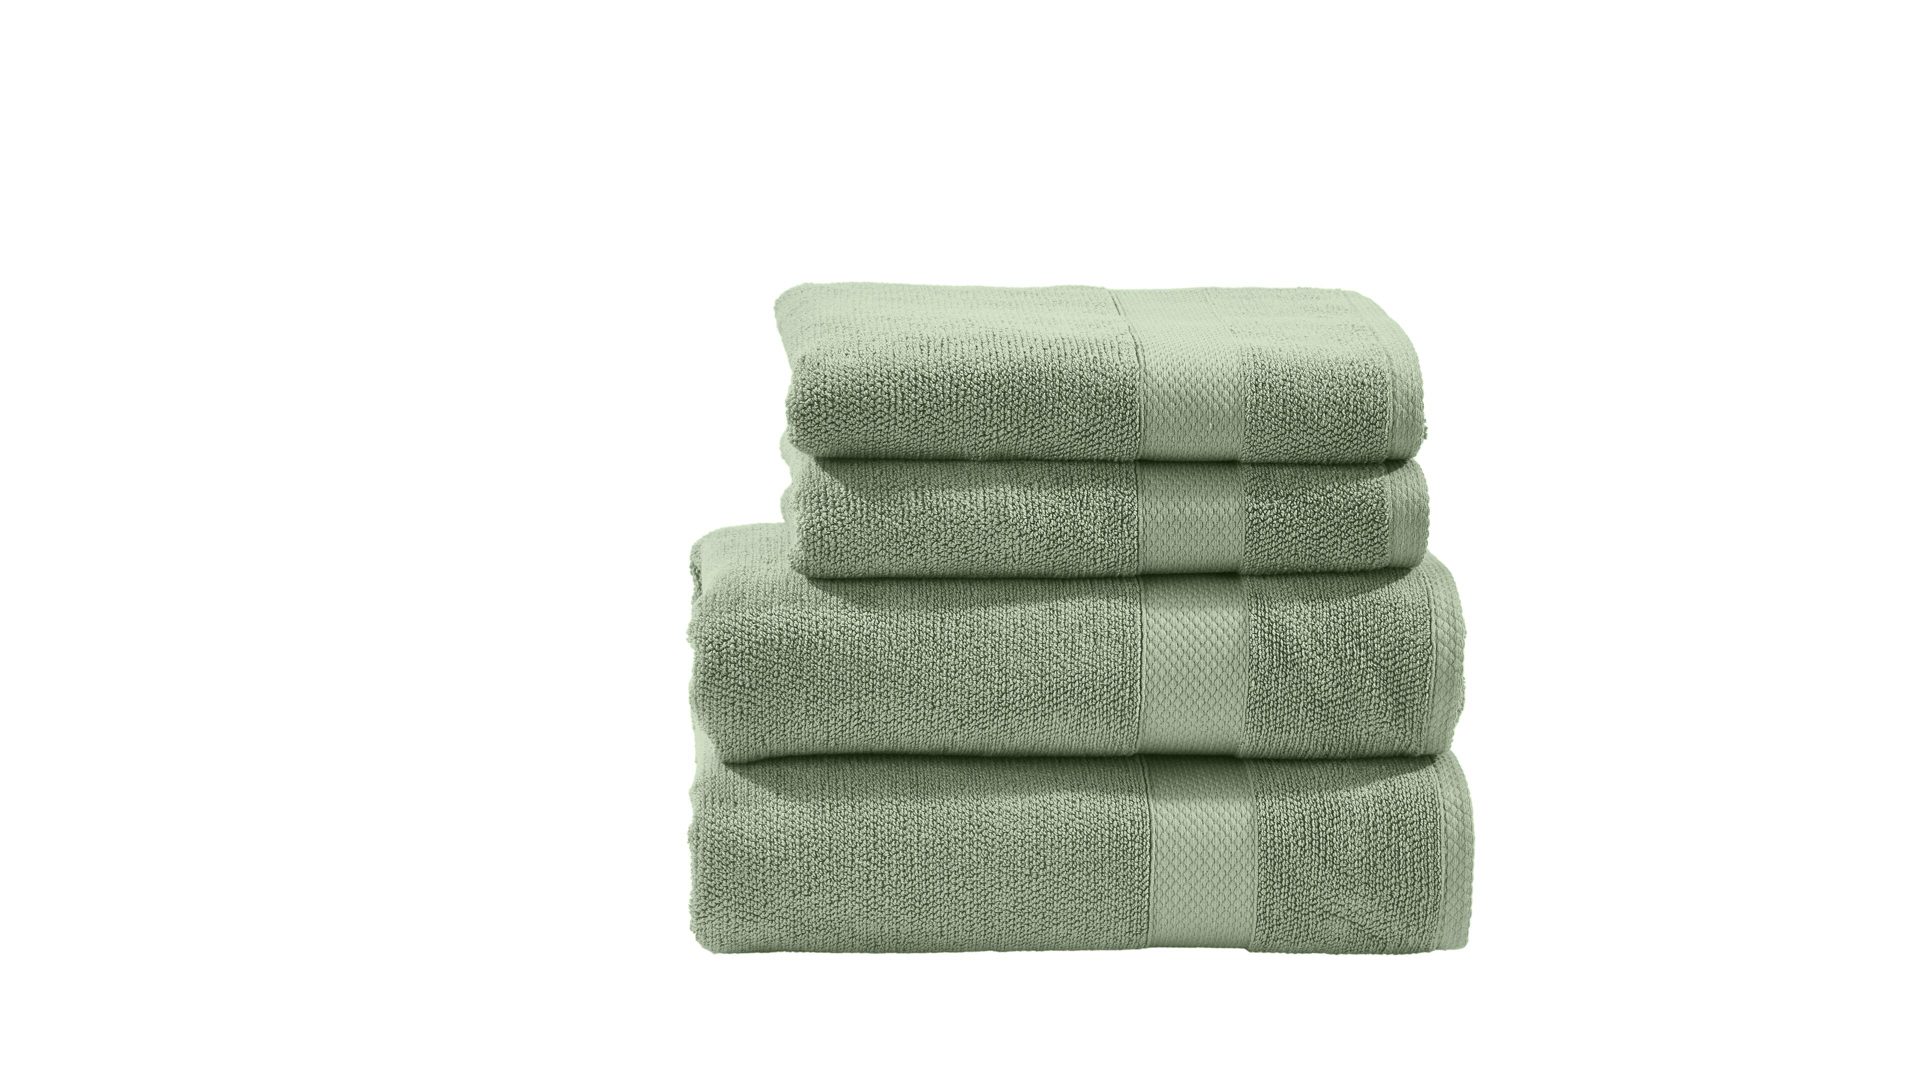 Handtuch-Set Done by karabel home company aus Stoff in Pastellfarben done Handtuch-Set Deluxe für Ihre Heimtextilien eisbergfarbene Baumwolle – vierteilig